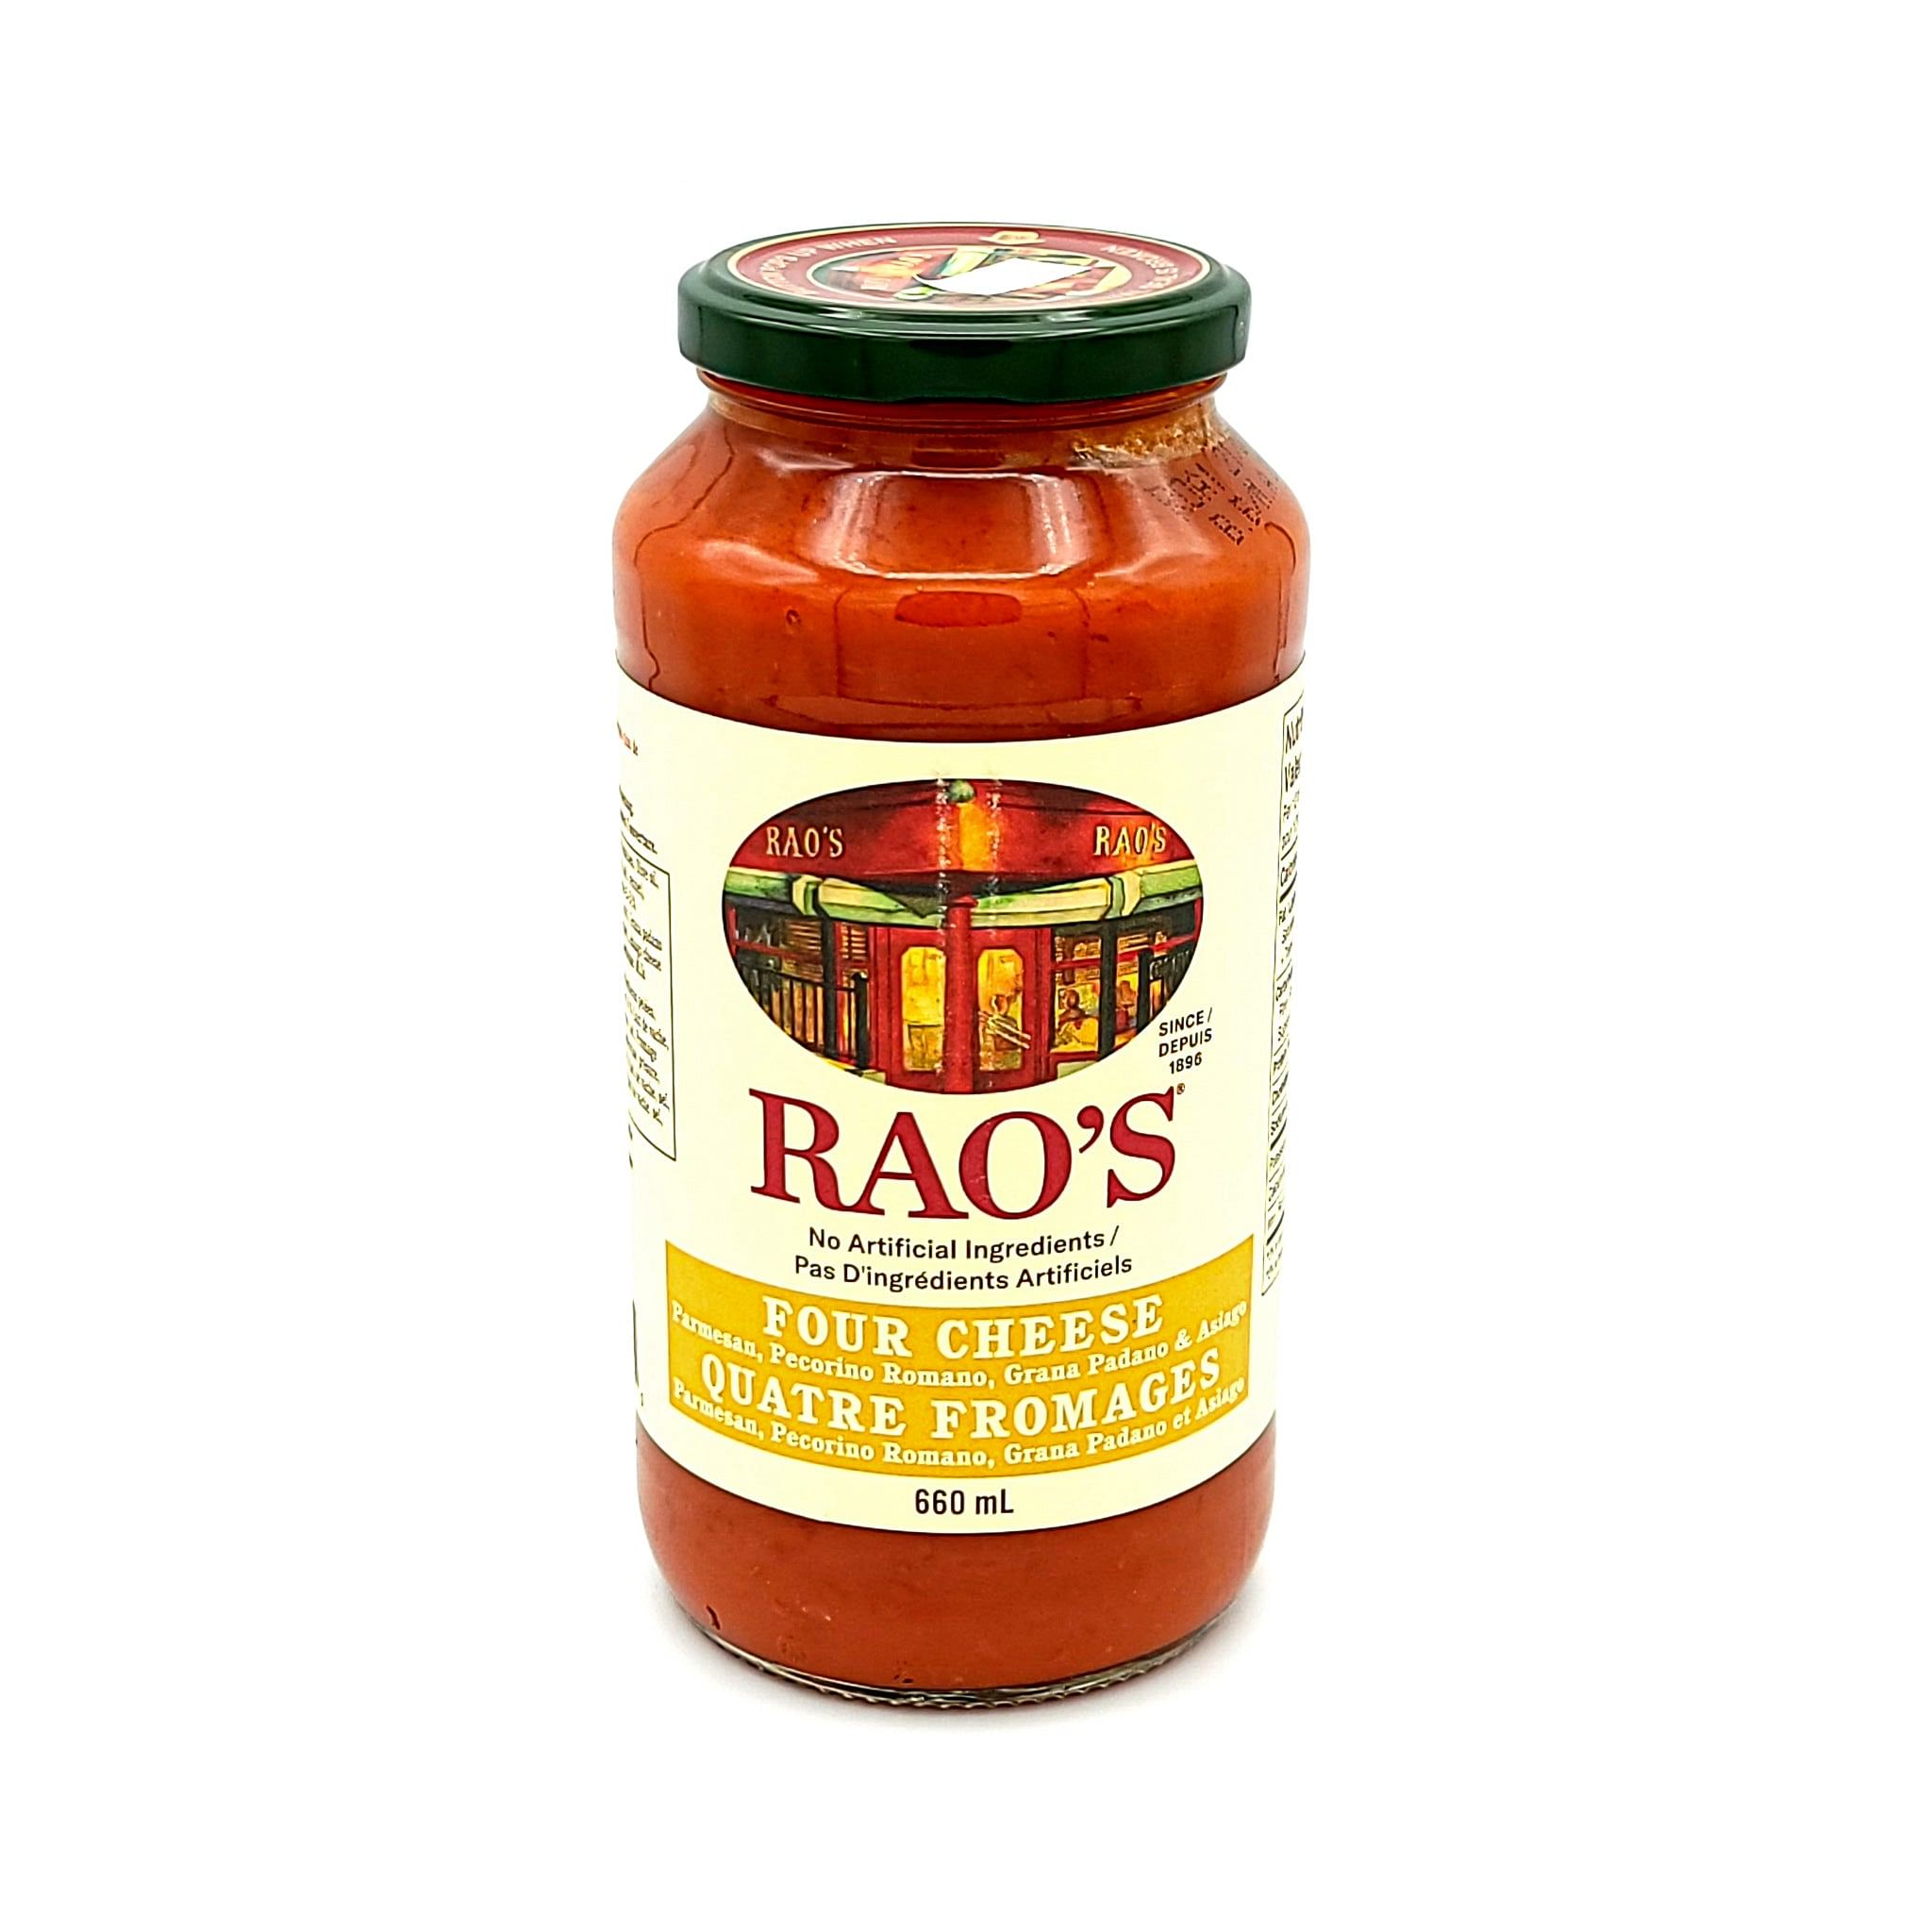 RAO'S Homemade - Four Cheese Sauce